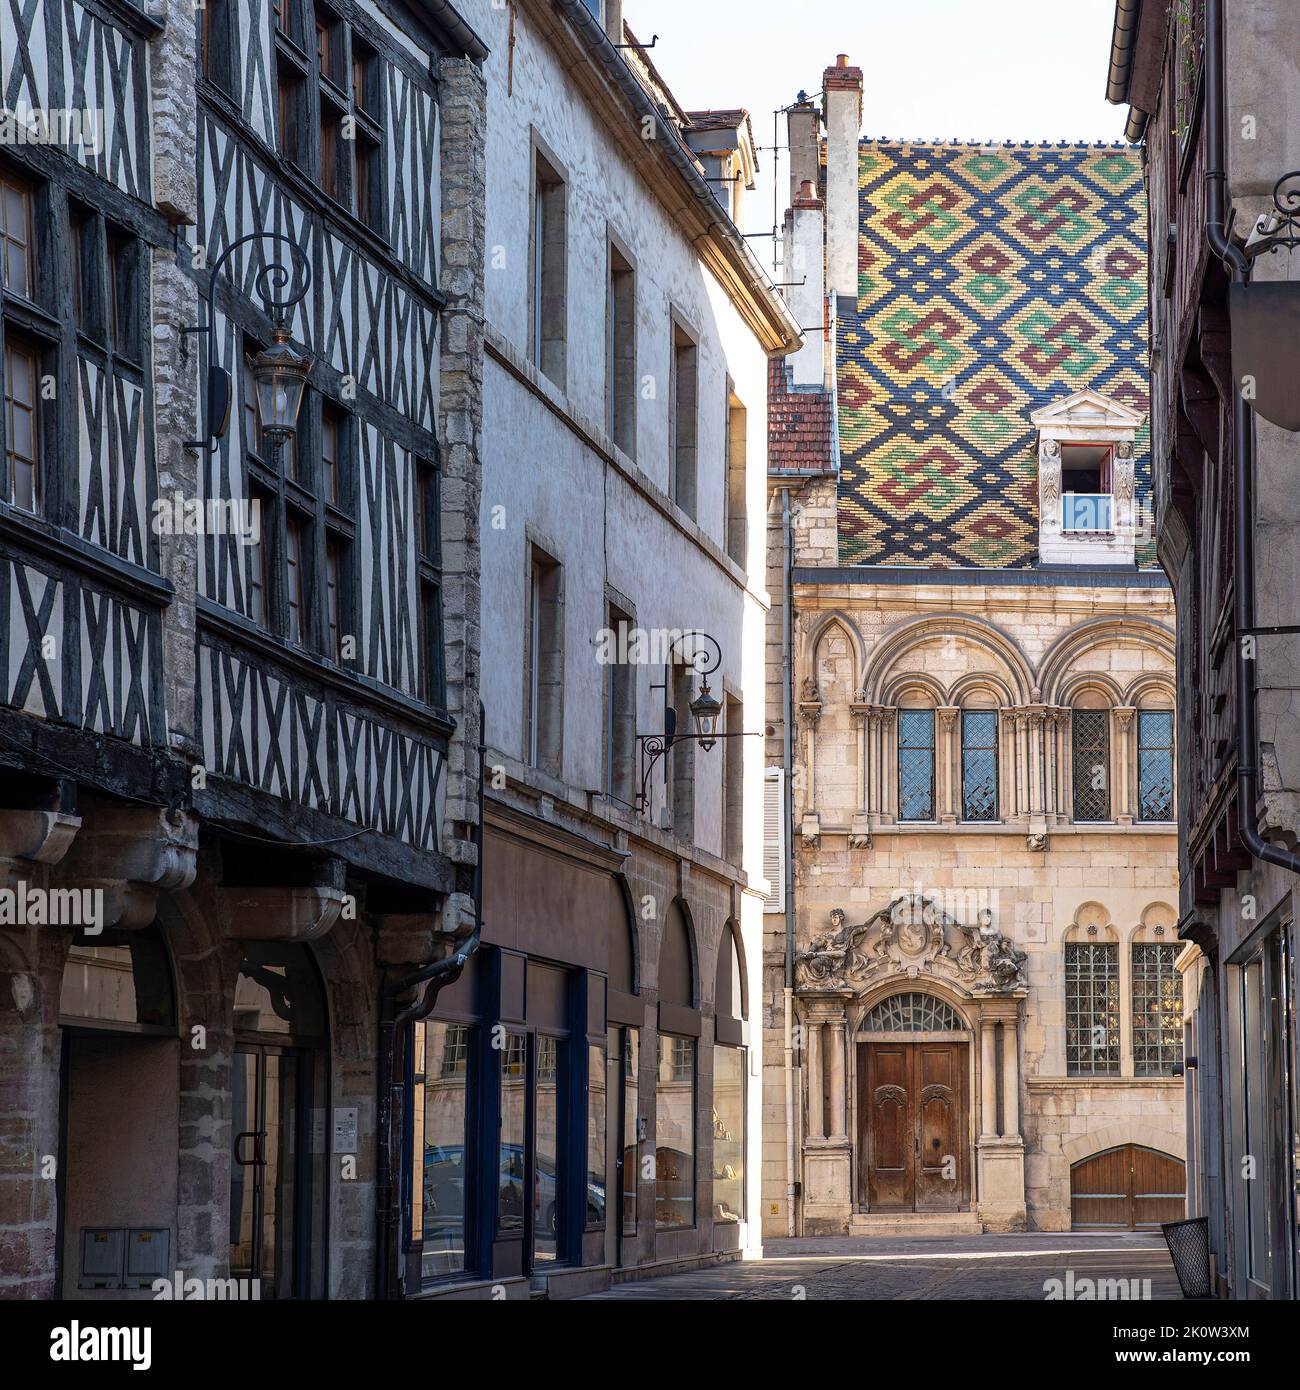 Belle architecture dans le centre-ville de Dijon en France avec des toits de tuiles de couleur typique Banque D'Images